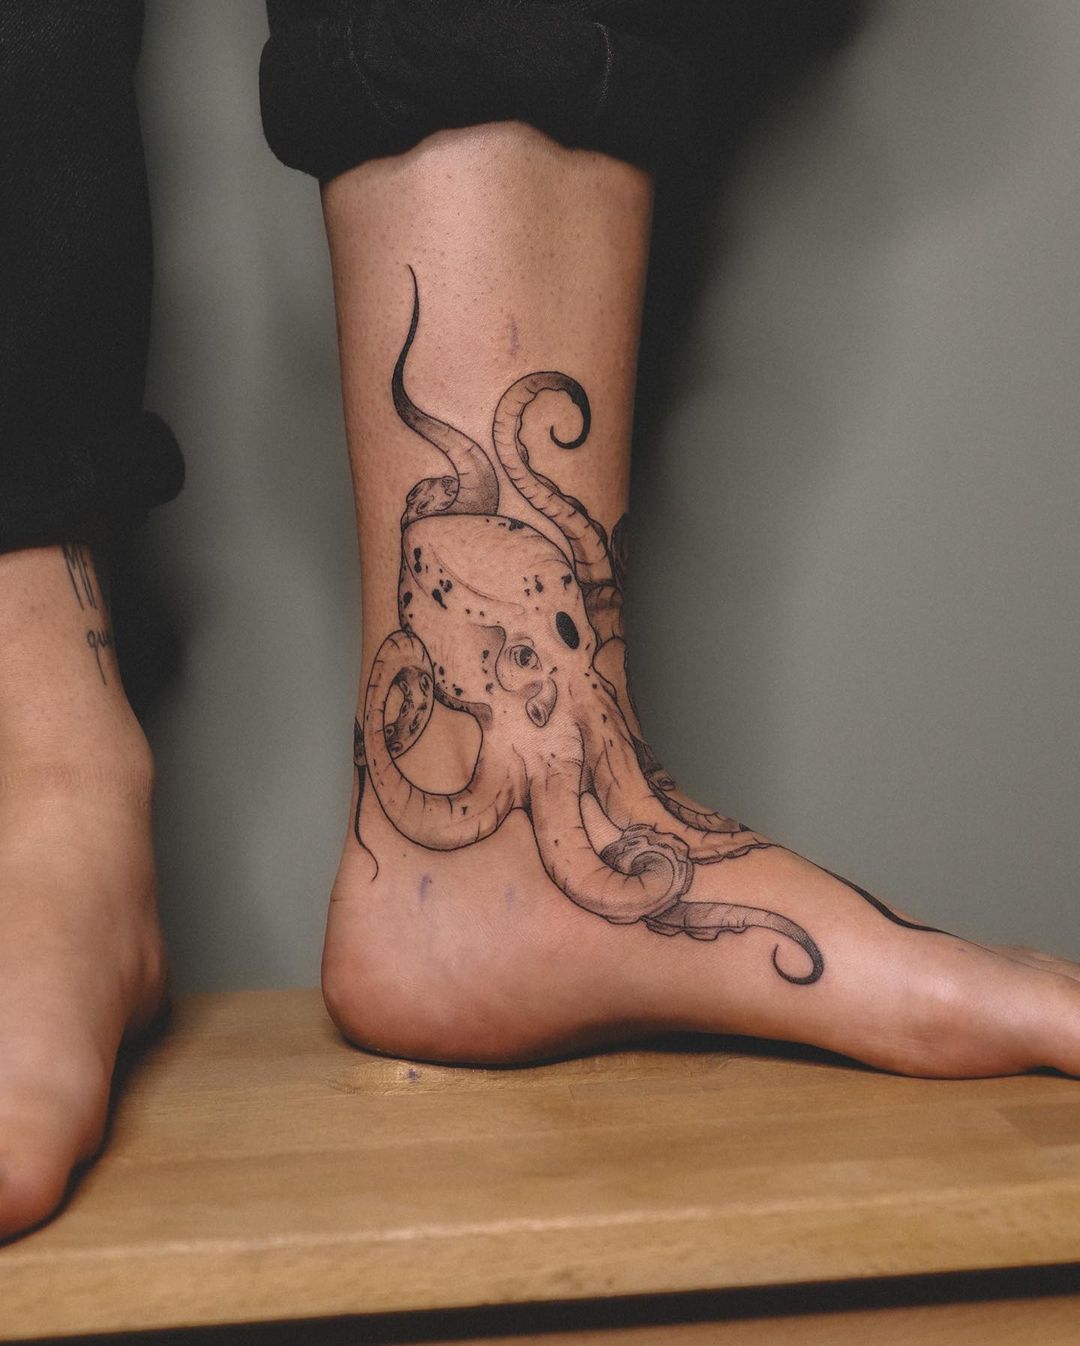 20 Impressive Foot Tattoo Ideas For Women - Tikli